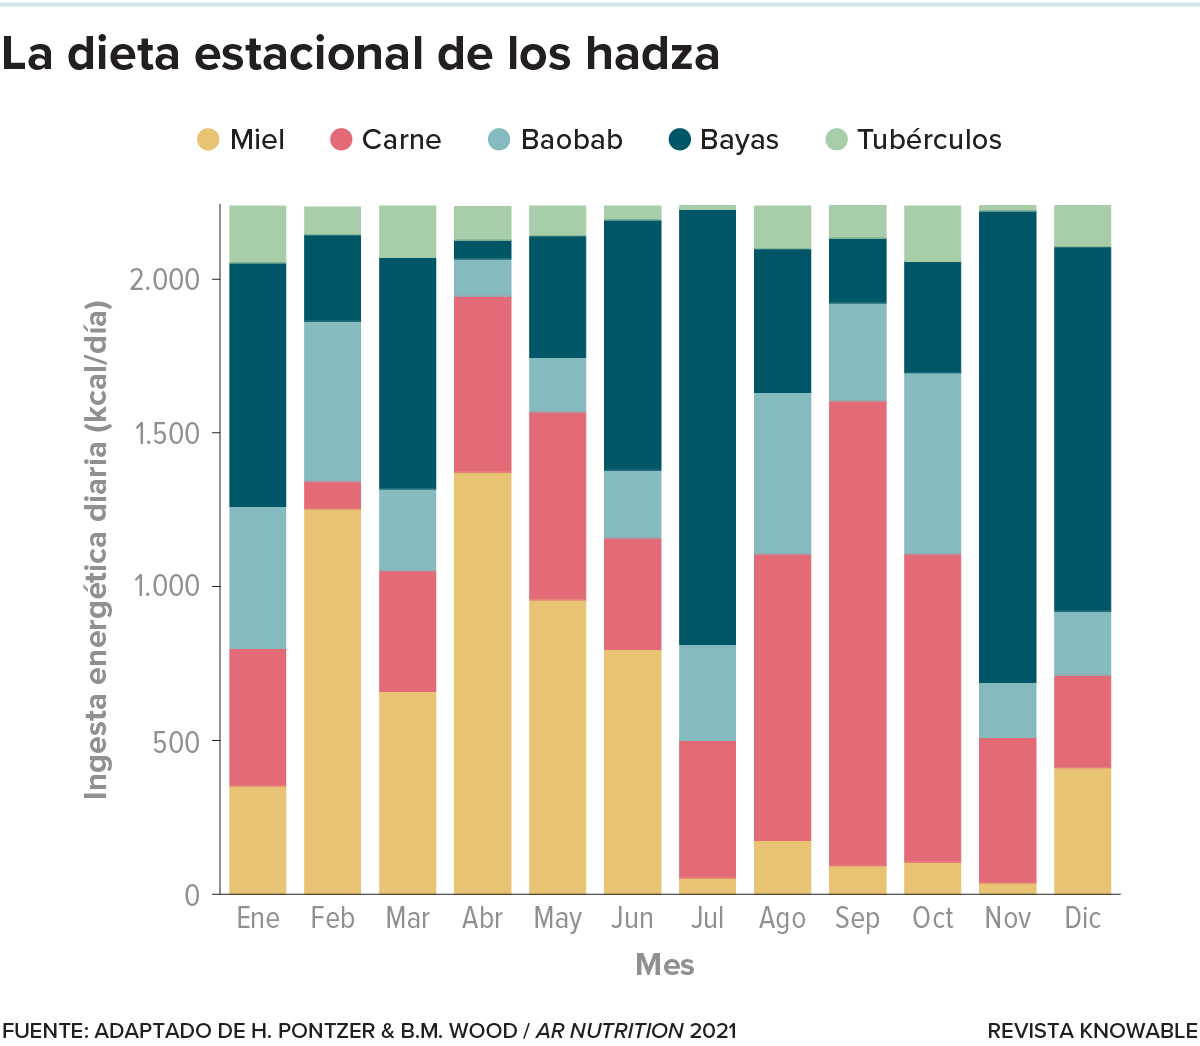 Gráfico de barras que muestra la composición de la dieta de los hadza en cada mes del año.